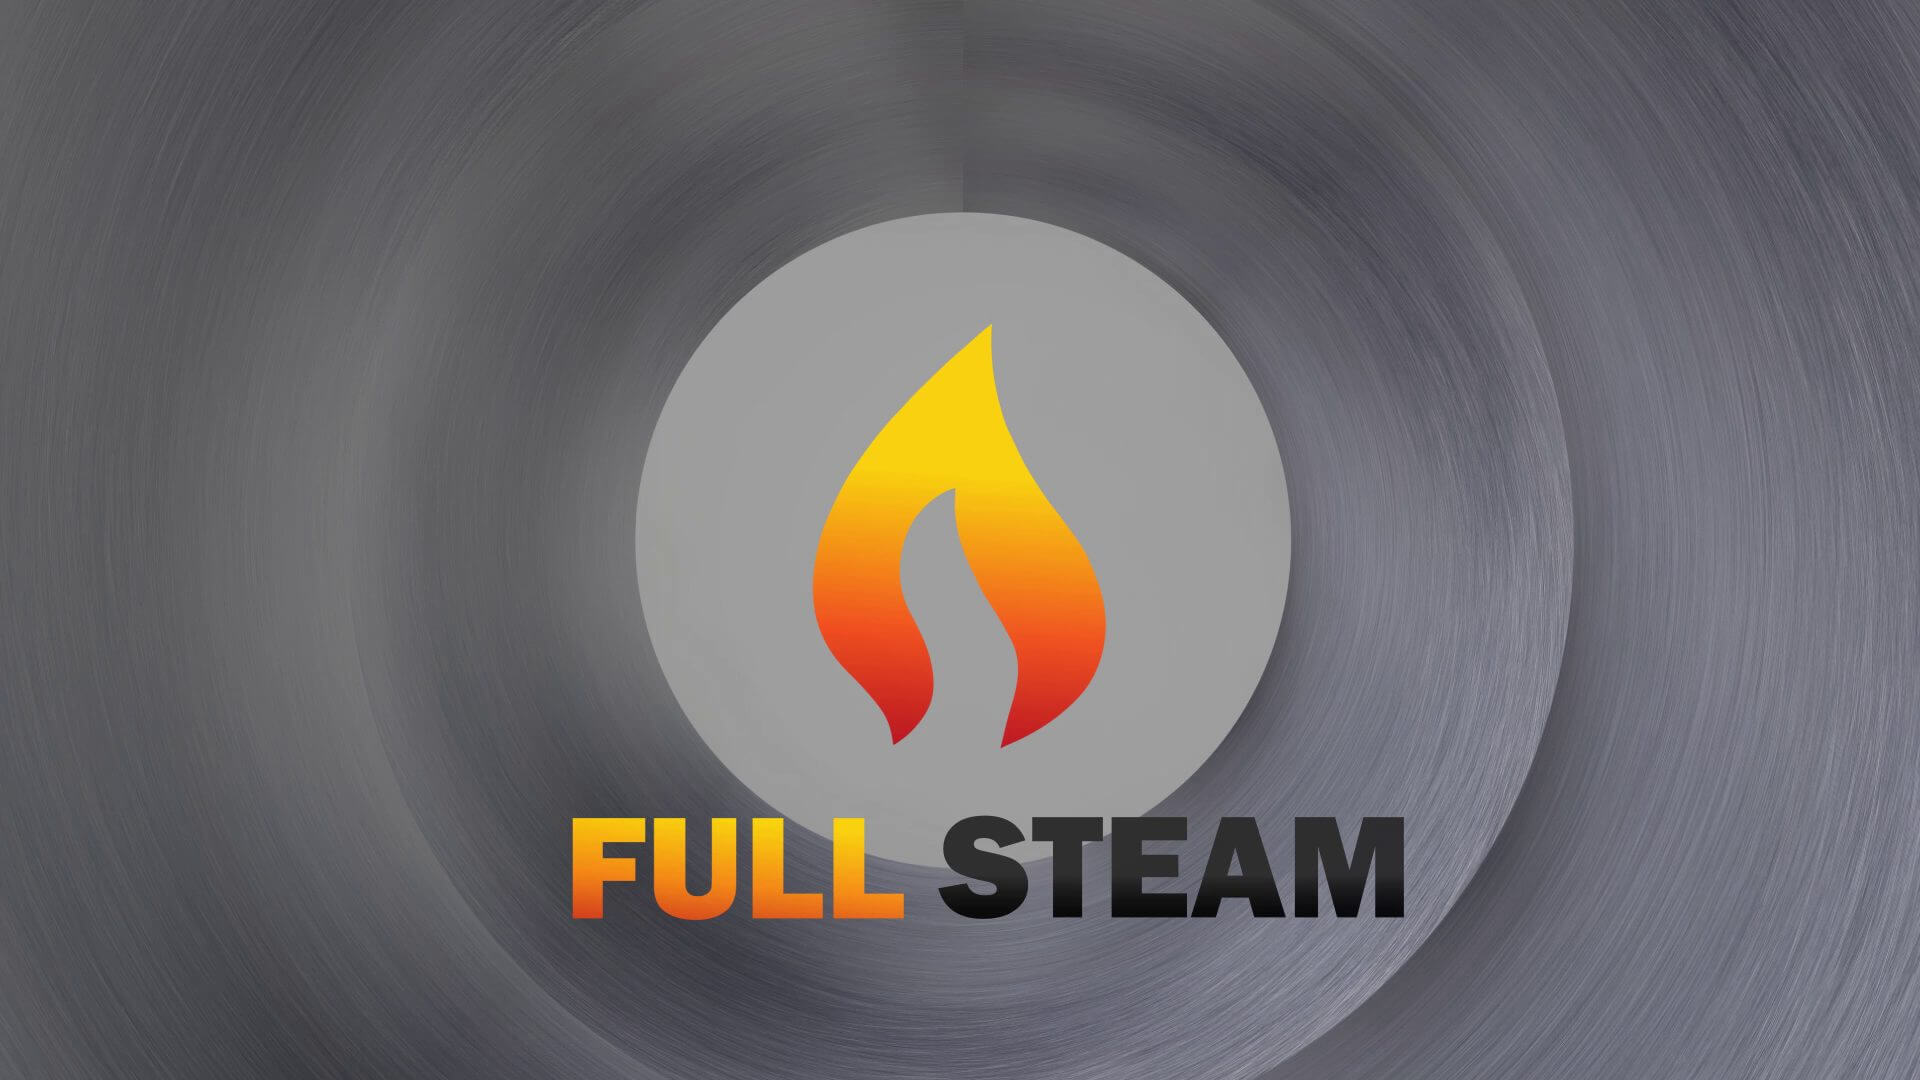 Full Steam